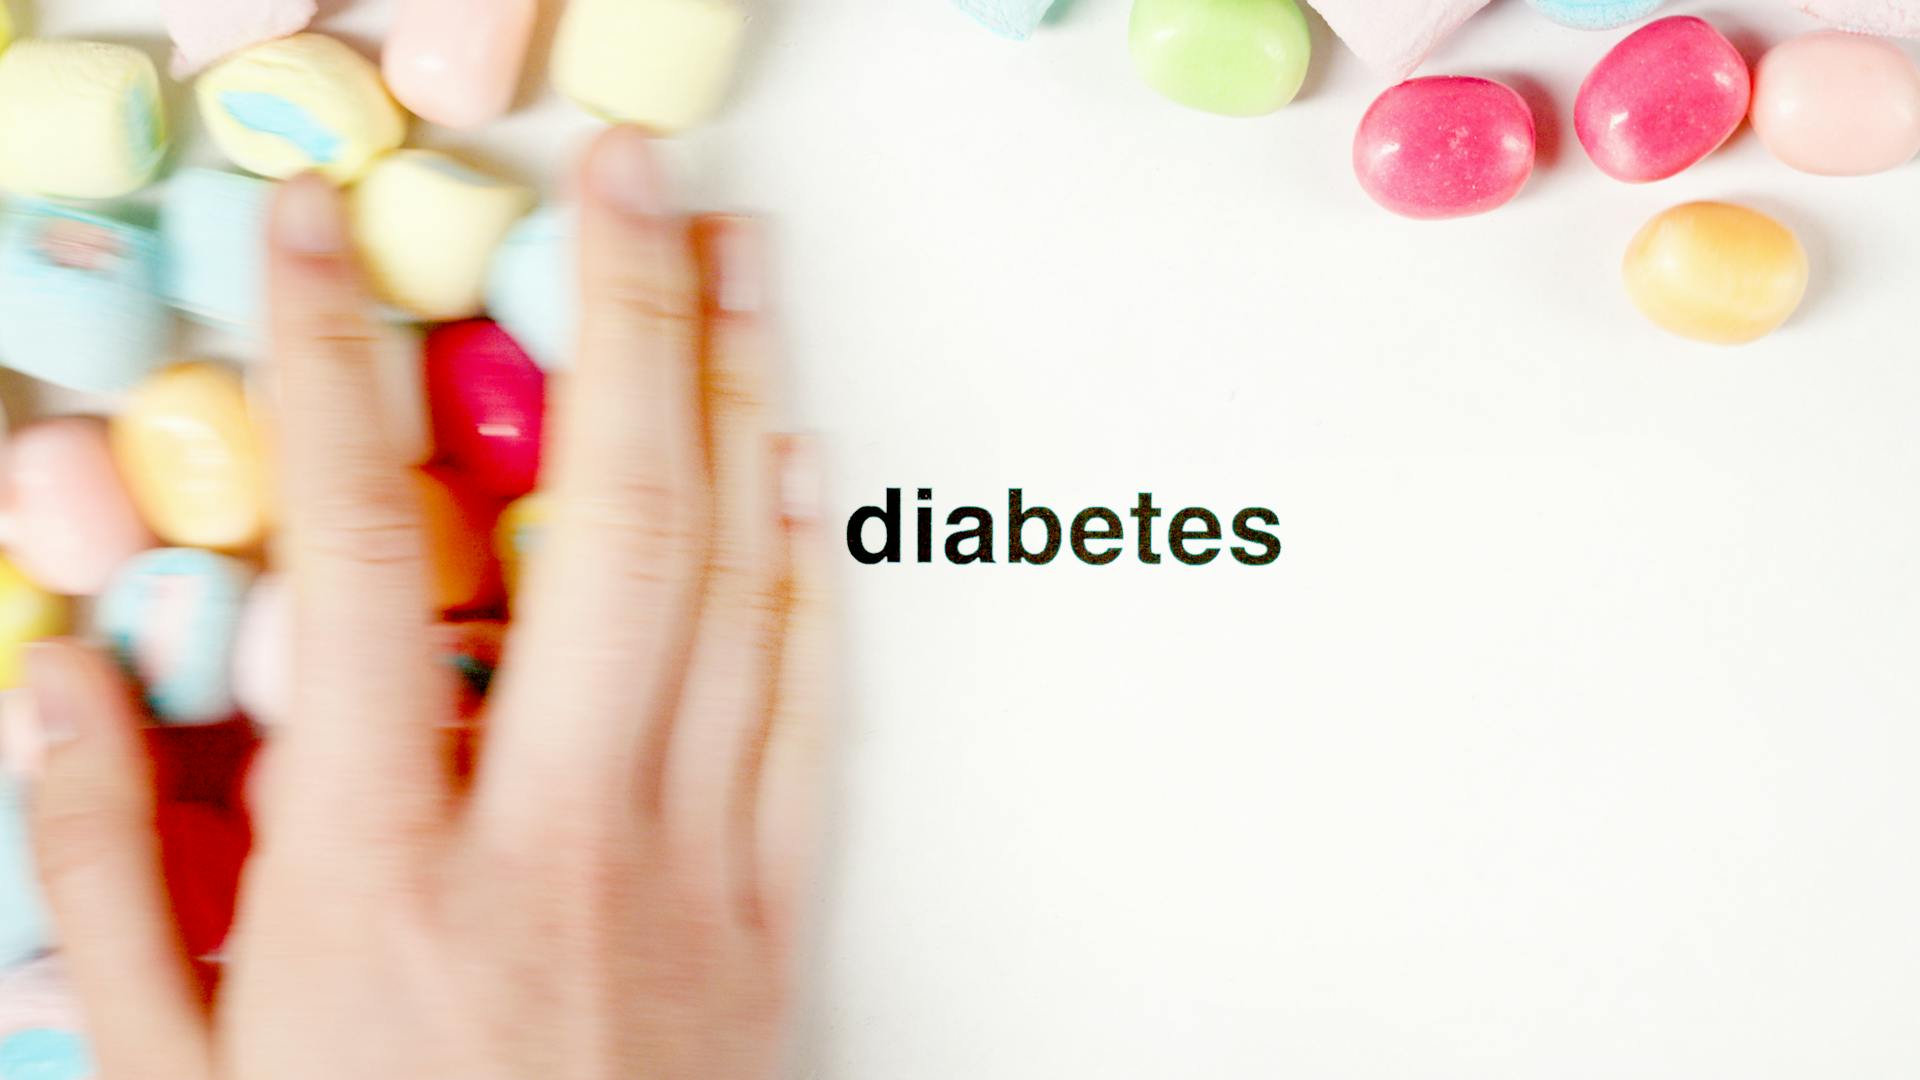 Concept of Diabetes Awareness